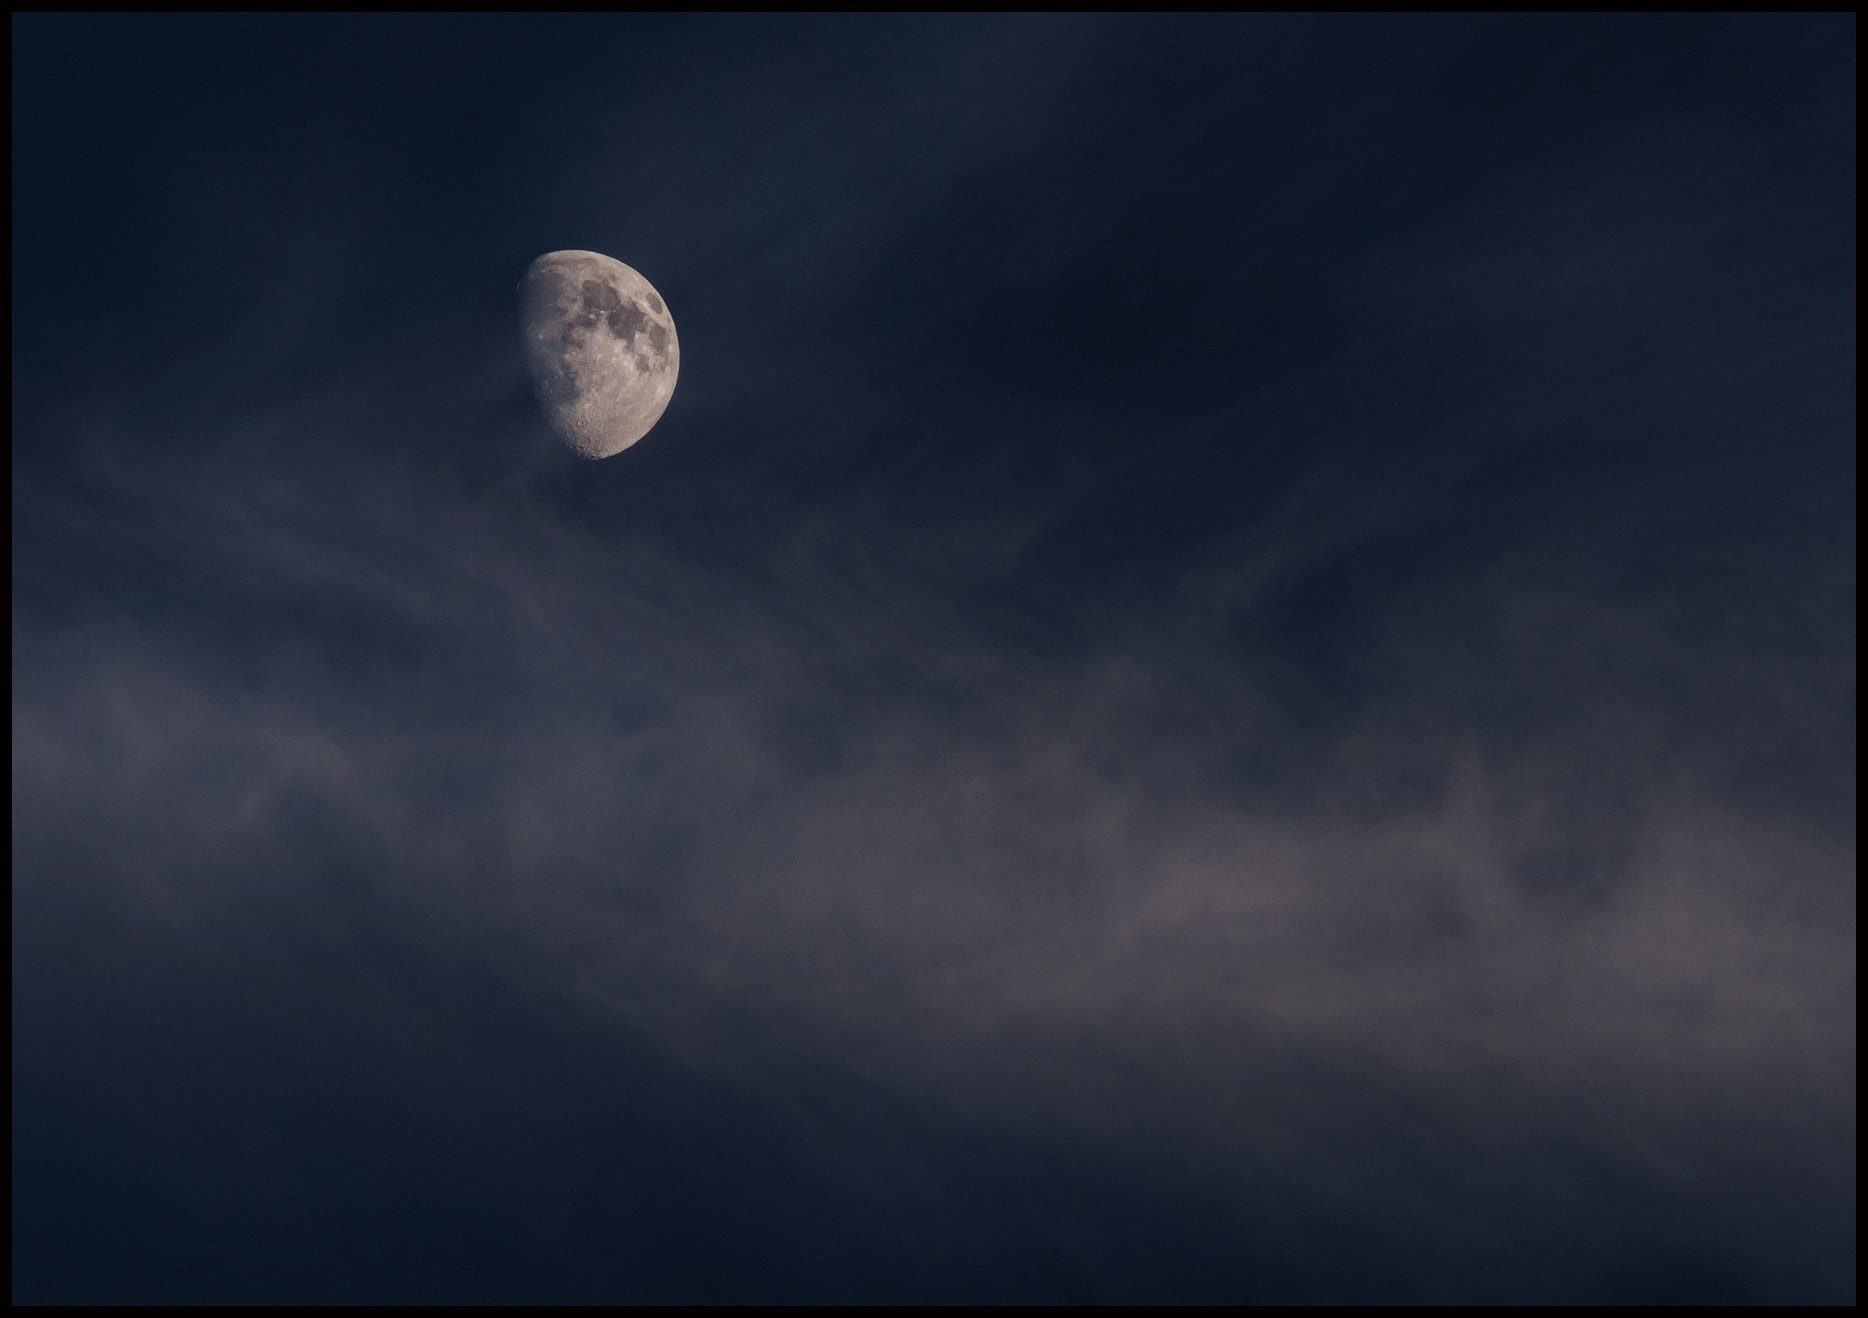 Nikon D90 + AF Nikkor 70-210mm f/4-5.6 sample photo. Moon at sunset photography